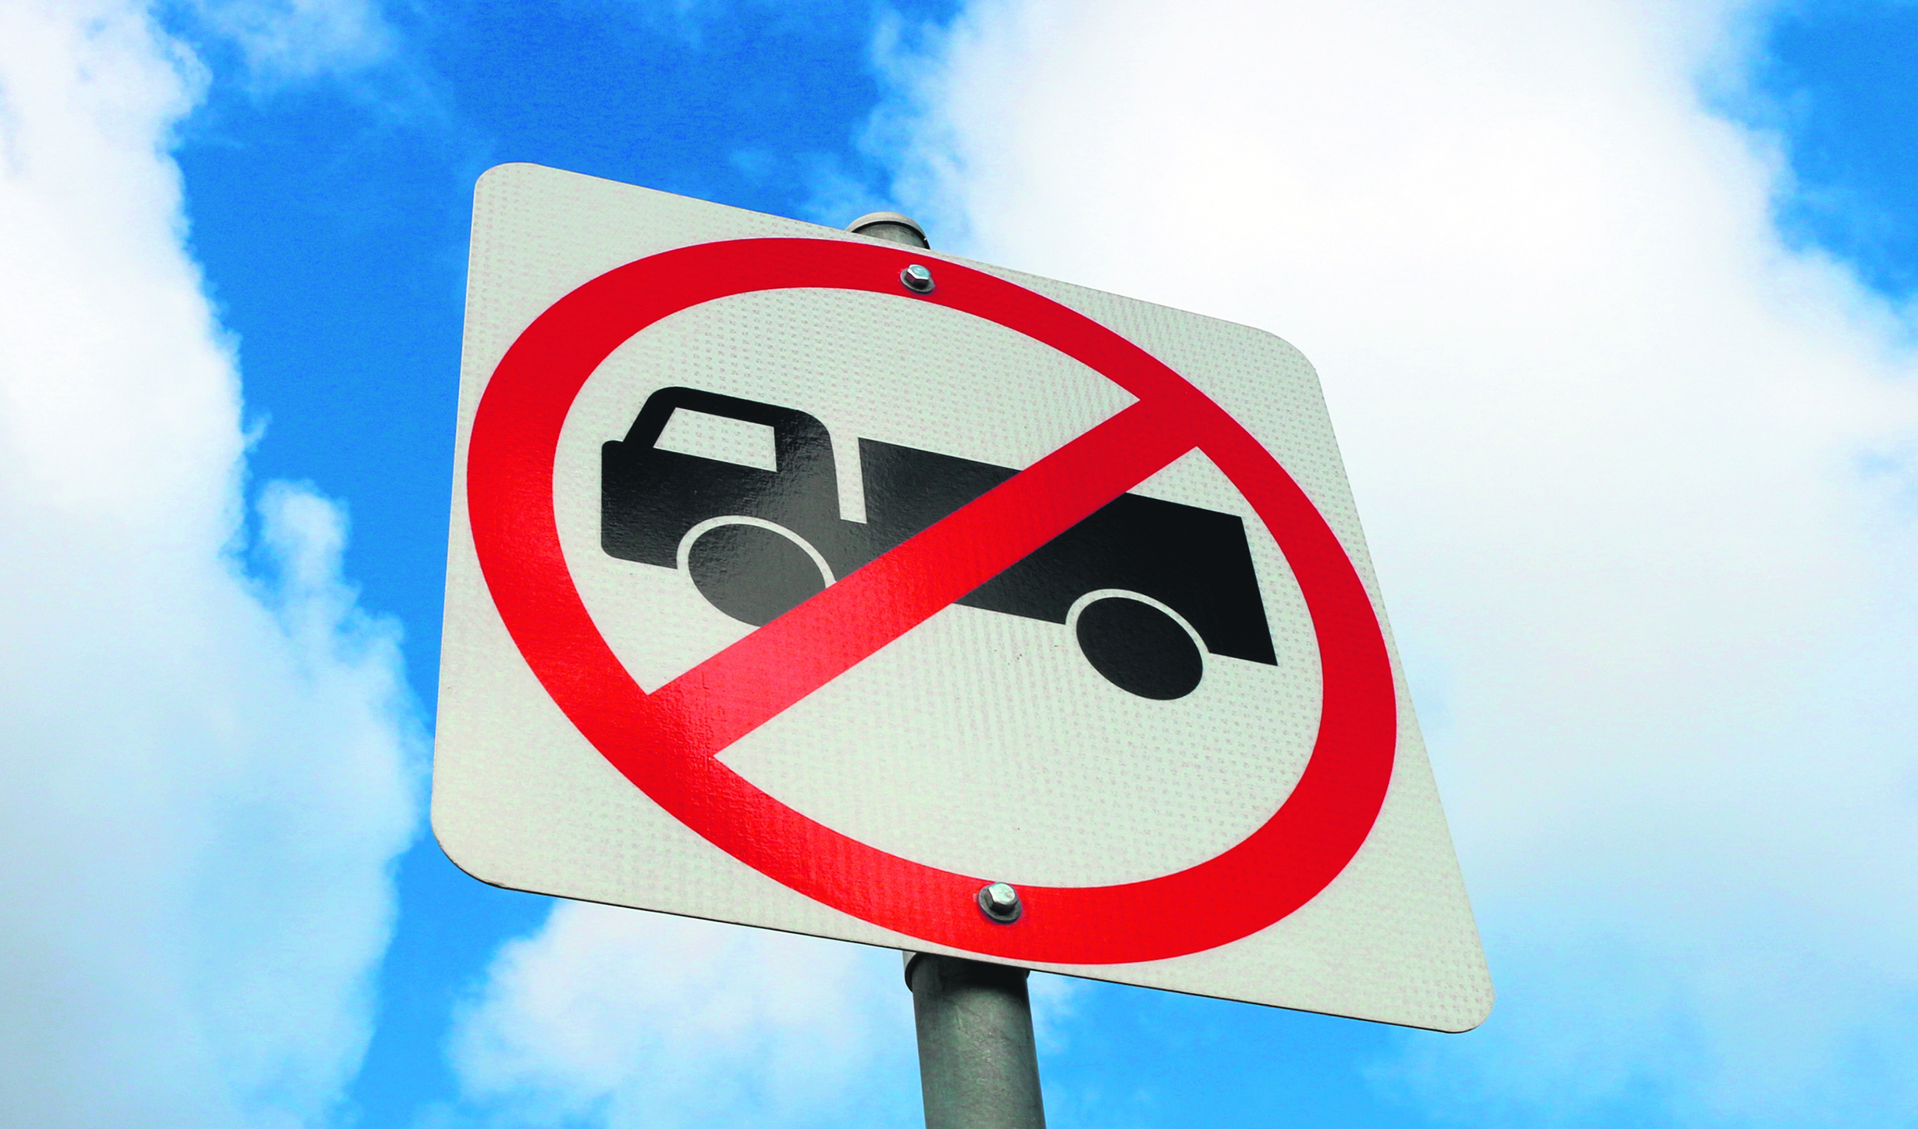 verkeersbord verboden voor vrachtwagens_493378171.jpg